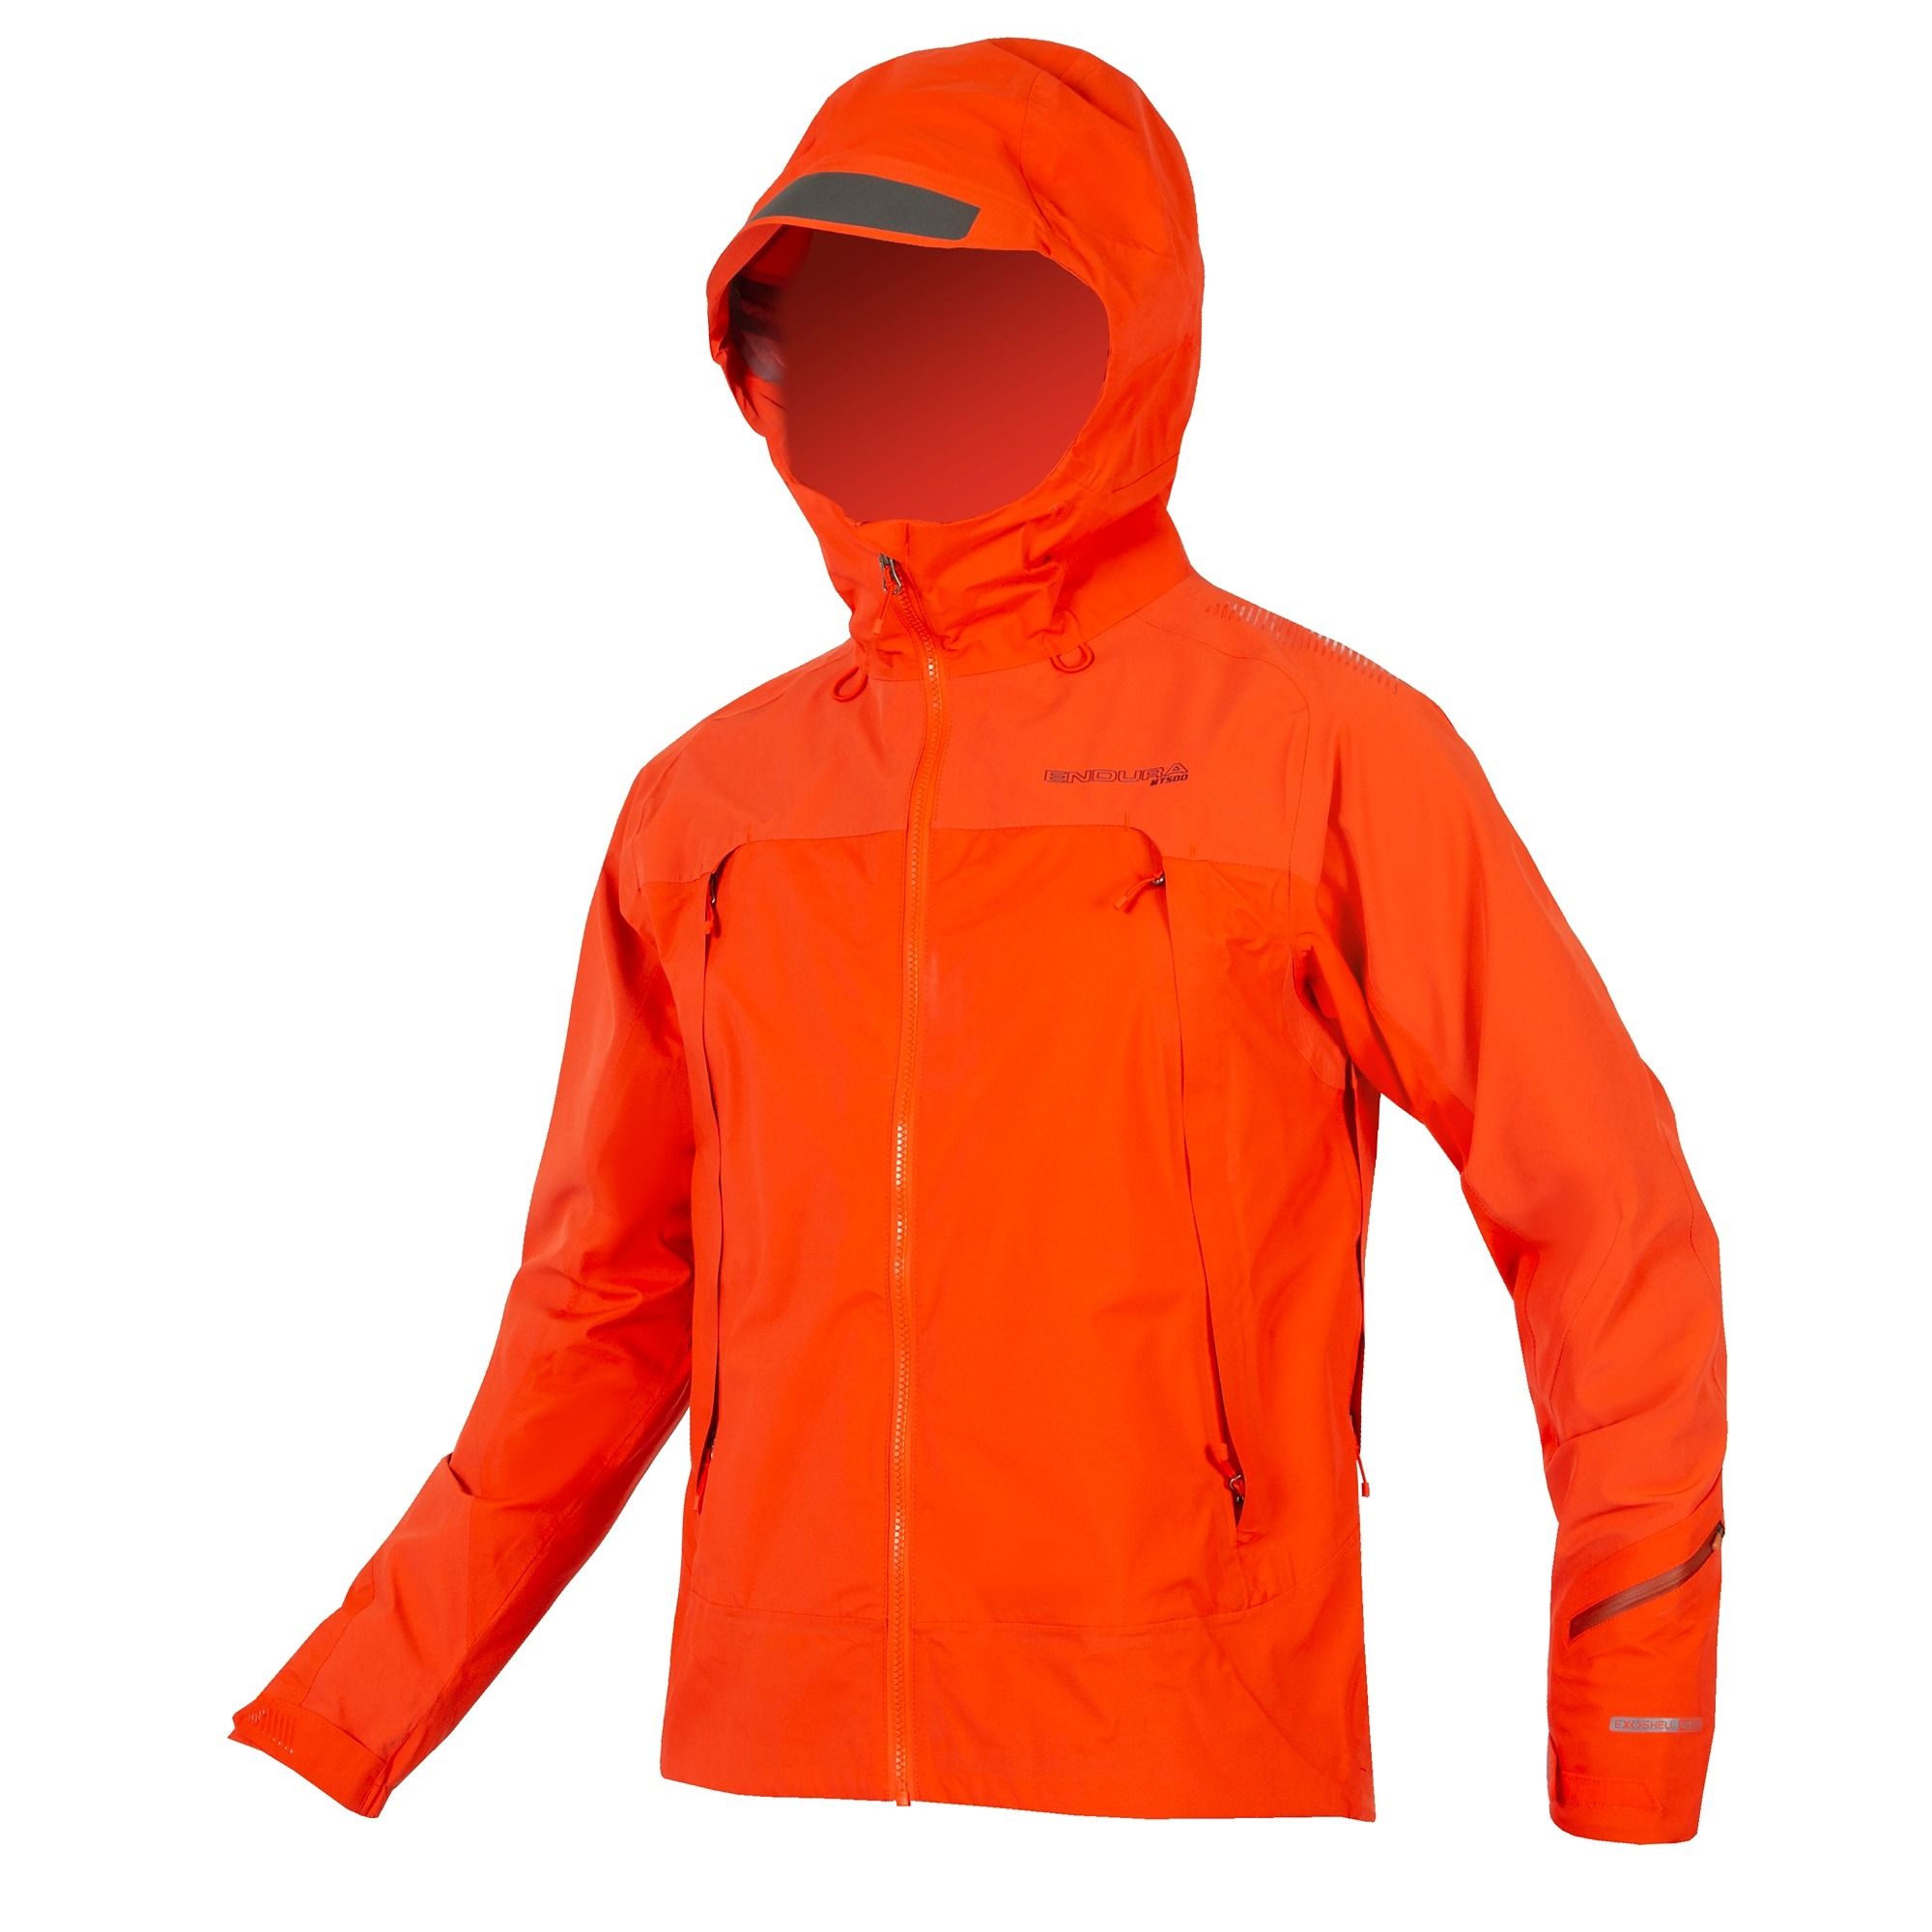 Endura Mt500 Waterproof Jacket 2 - £199.99 | Jackets - Waterproof ...